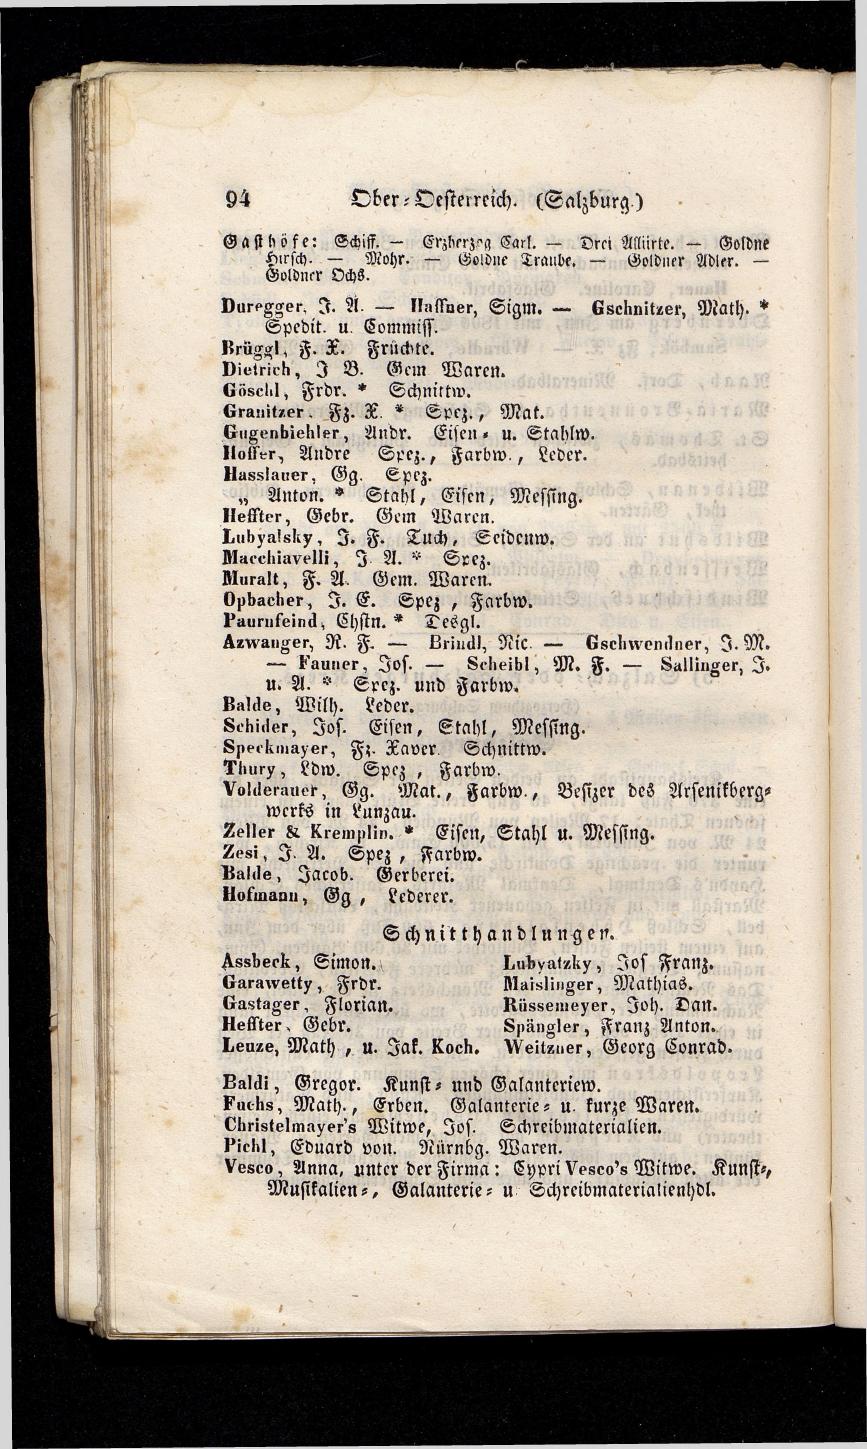 Grosses Adressbuch der Kaufleute. No. 13. Oesterreich ober u. unter der Enns 1844 - Seite 98